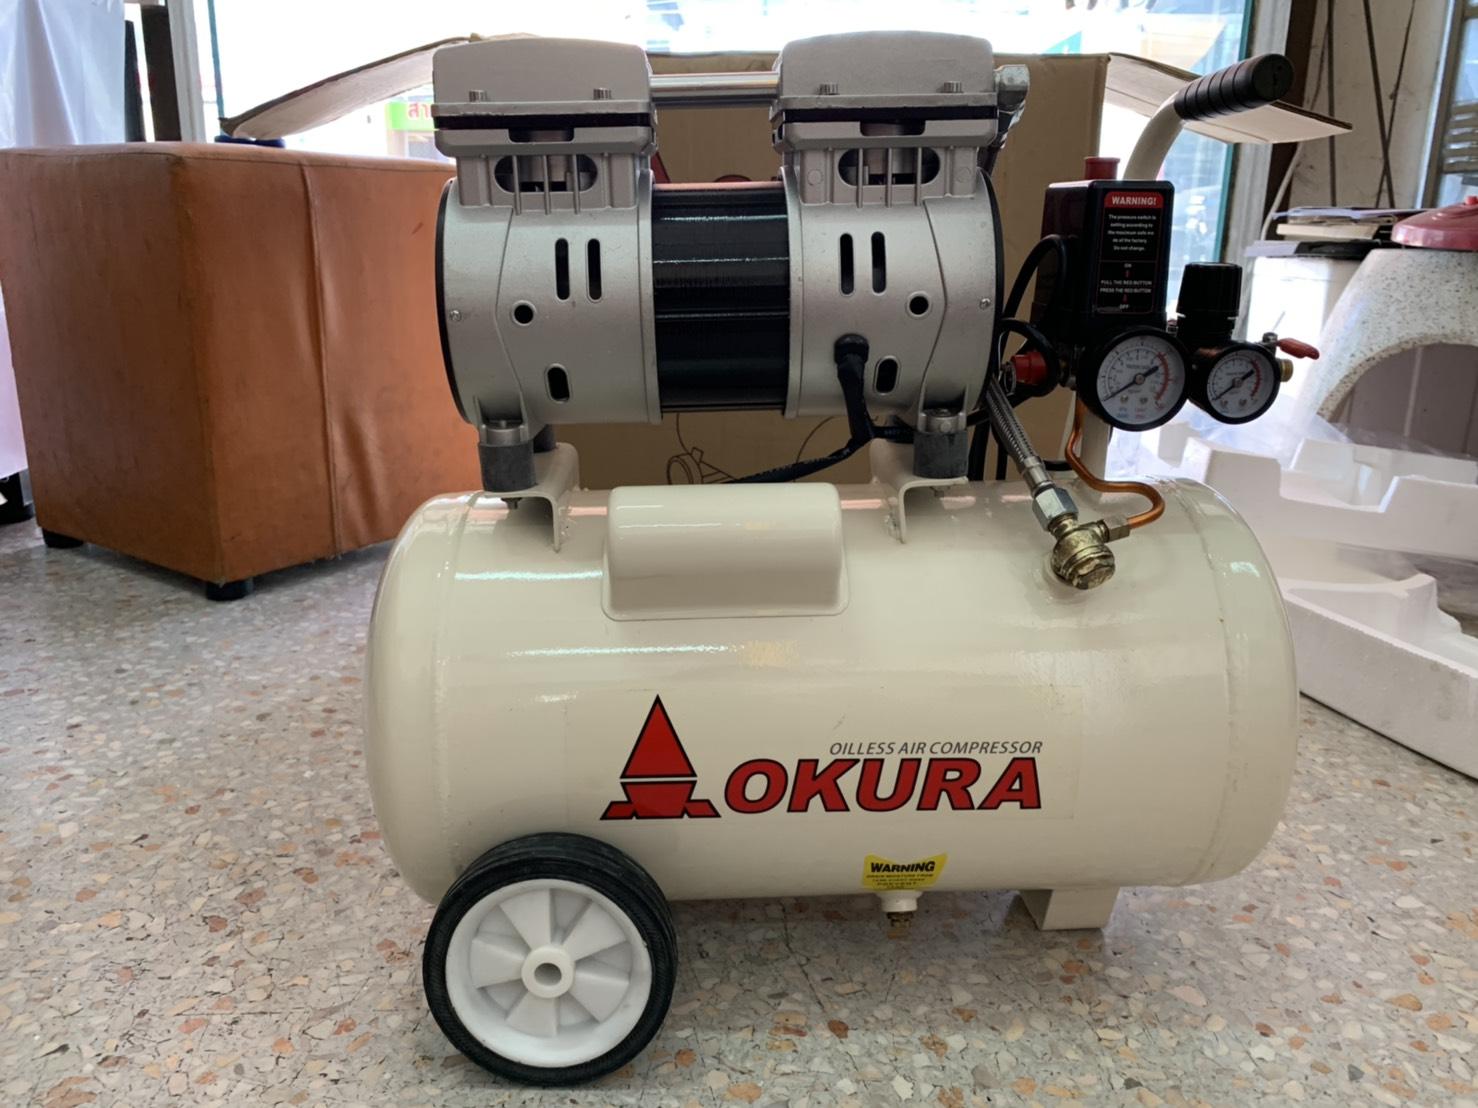 ถูกที่สุด ปั๊มลม Oiless  okura 24 ลิตร เสียงเงียบ ไม่ใช้น้ำมัน OKURA 24L Oiless Air Compressor